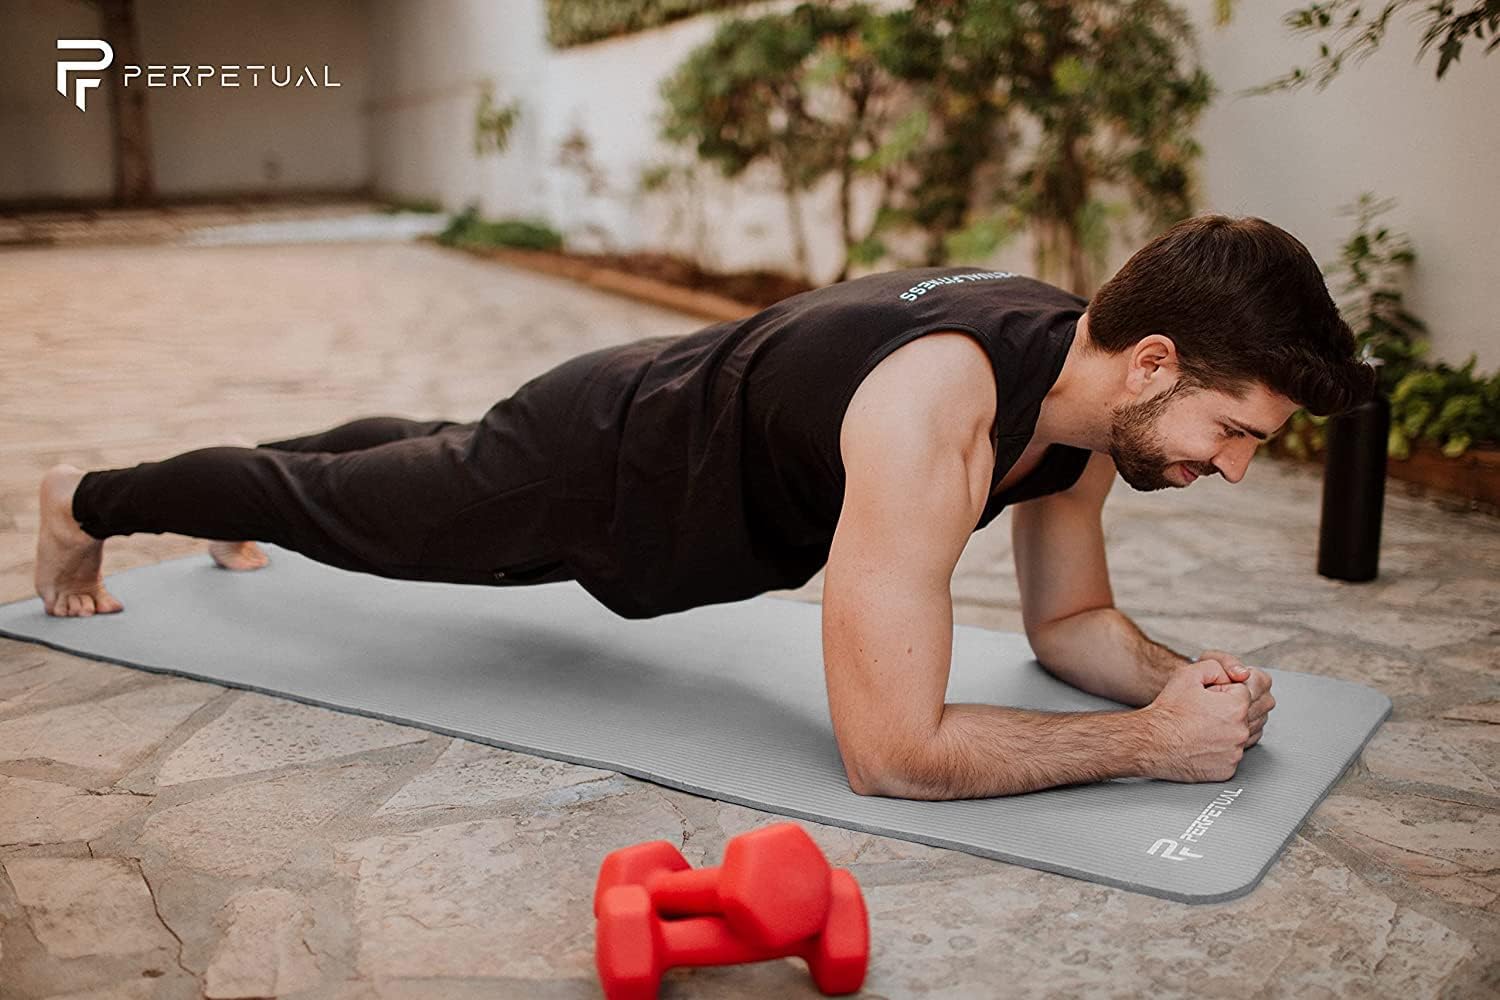 Esterilla De Yoga Y Pilates Antideslizante De 10mm Perpetual Con Correa Y Bolsa De Transporte  MKP